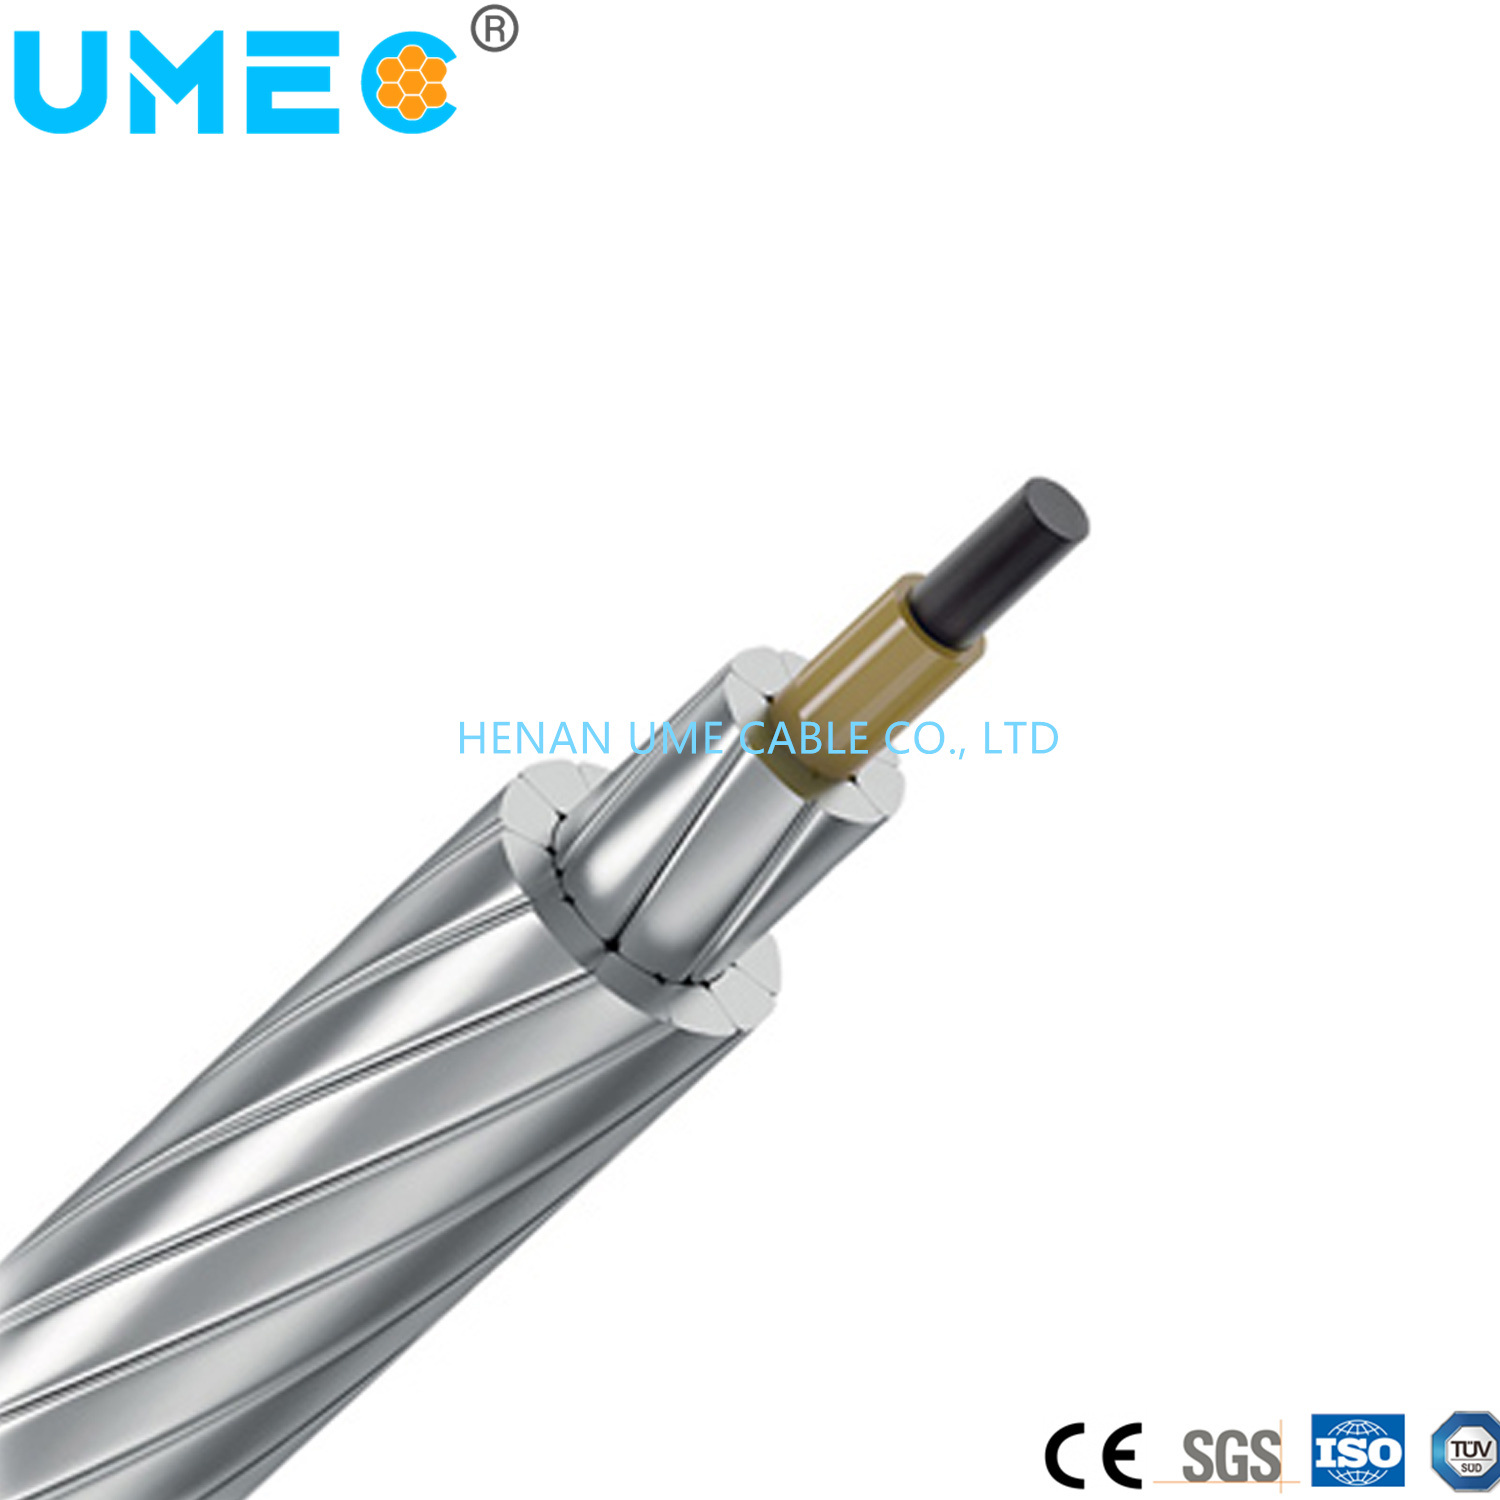 Accc Aluminum Conductor Composite Core Aluminium Conductor Carbon Fiber Composite Cable